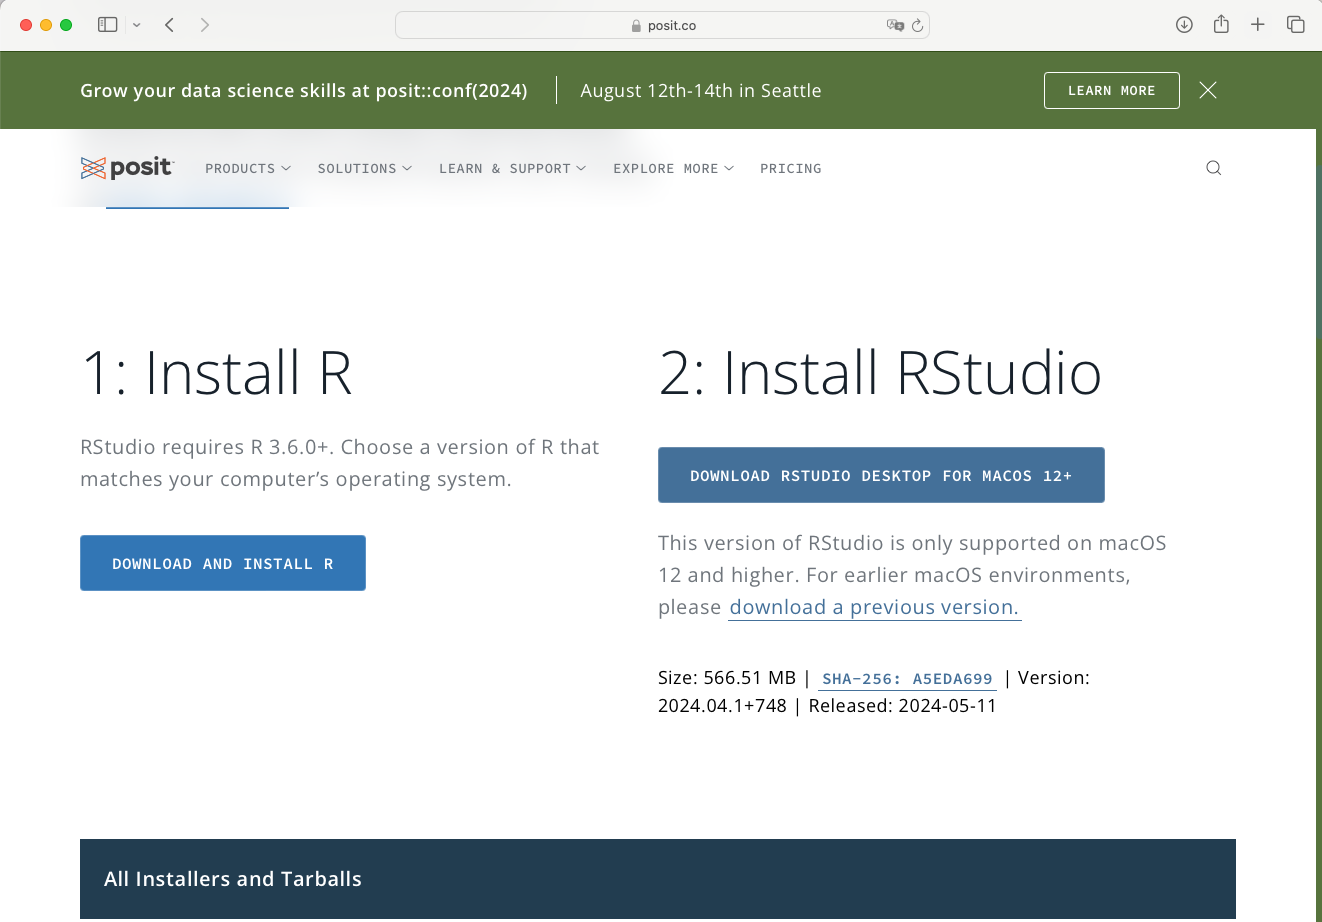 RStudio Desktop for macOS 12+ auswählen